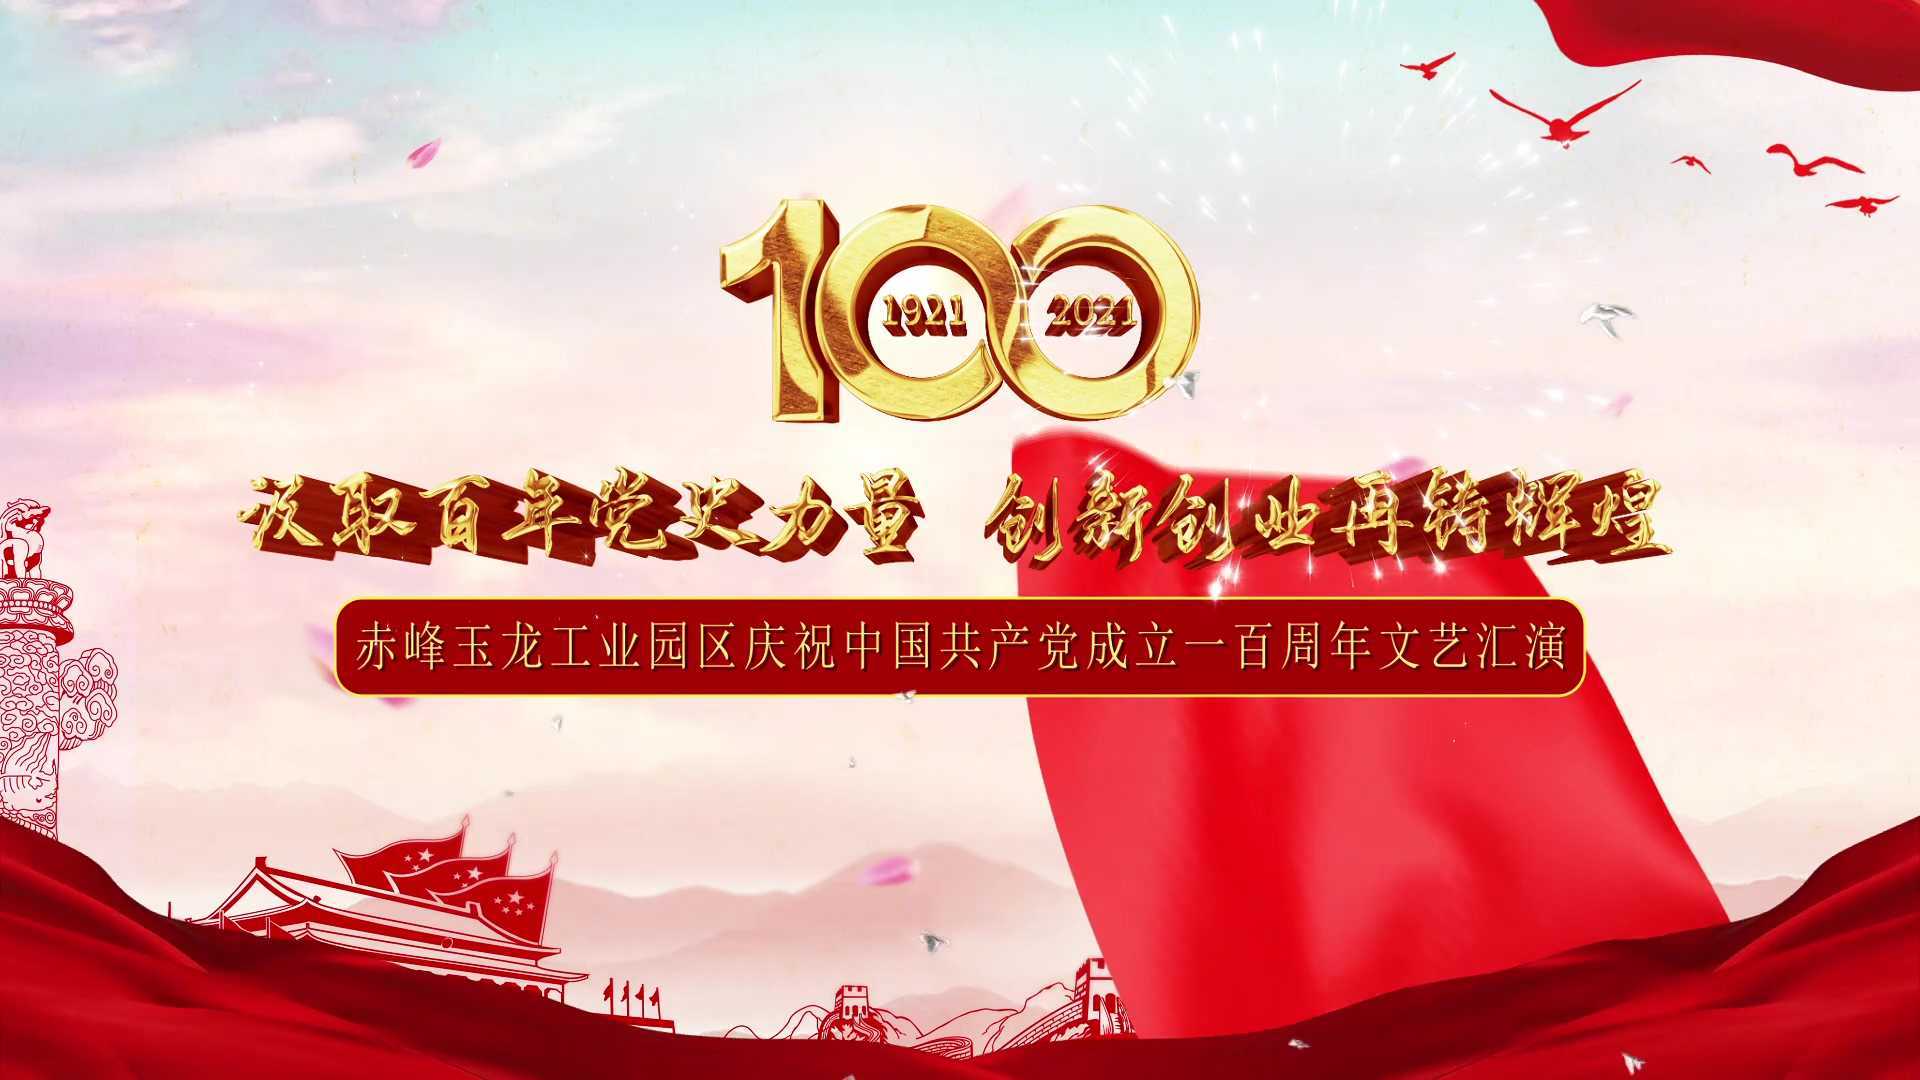 赤峰玉龙工业园区庆祝中国共产党成立一百周年文艺演出